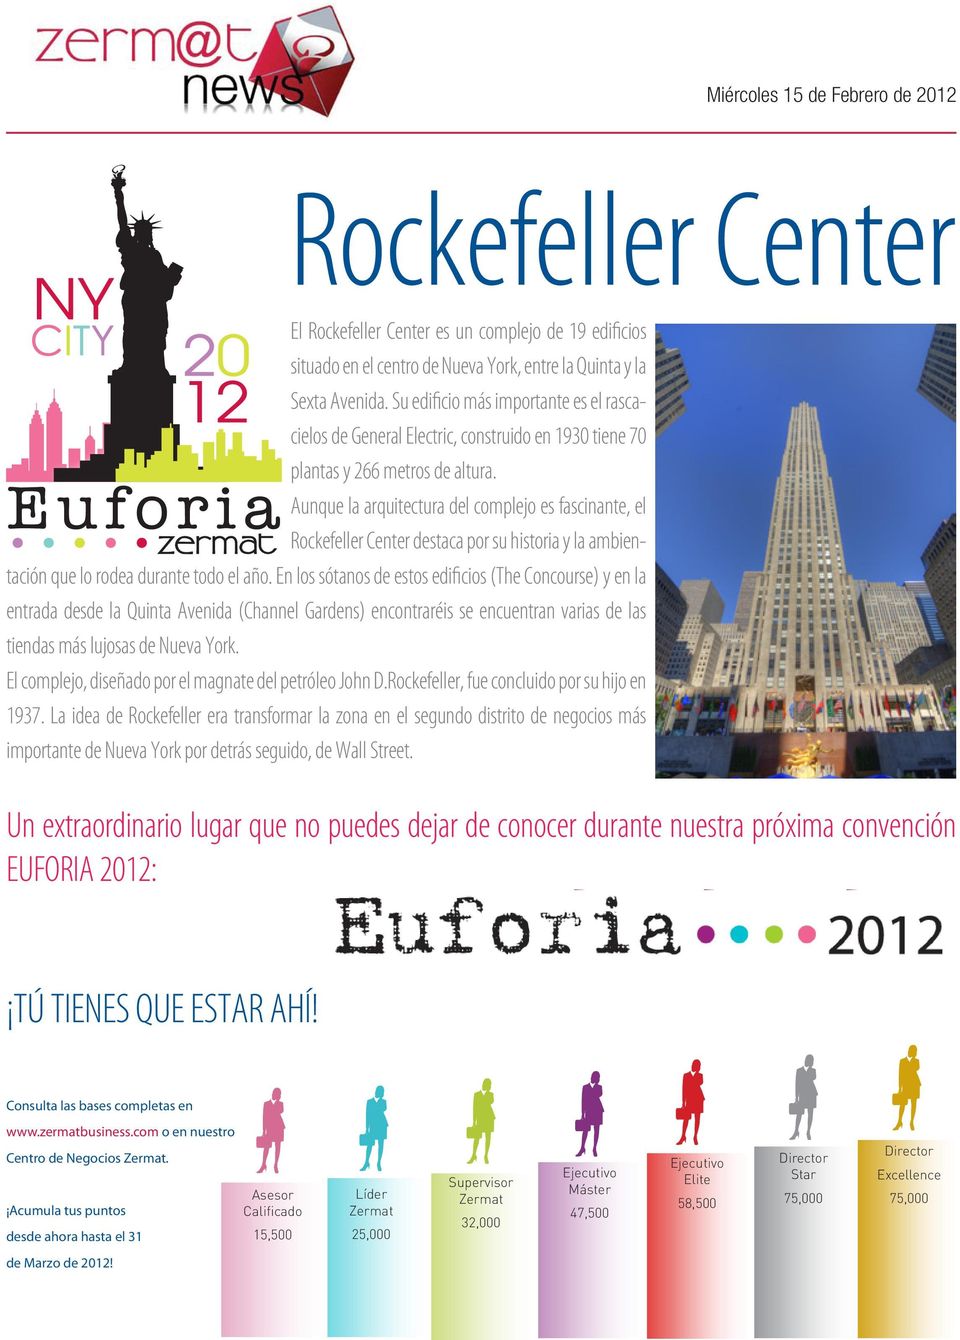 Aunque la arquitectura del complejo es fascinante, el Rockefeller Center destaca por su historia y la ambientación que lo rodea durante todo el año.